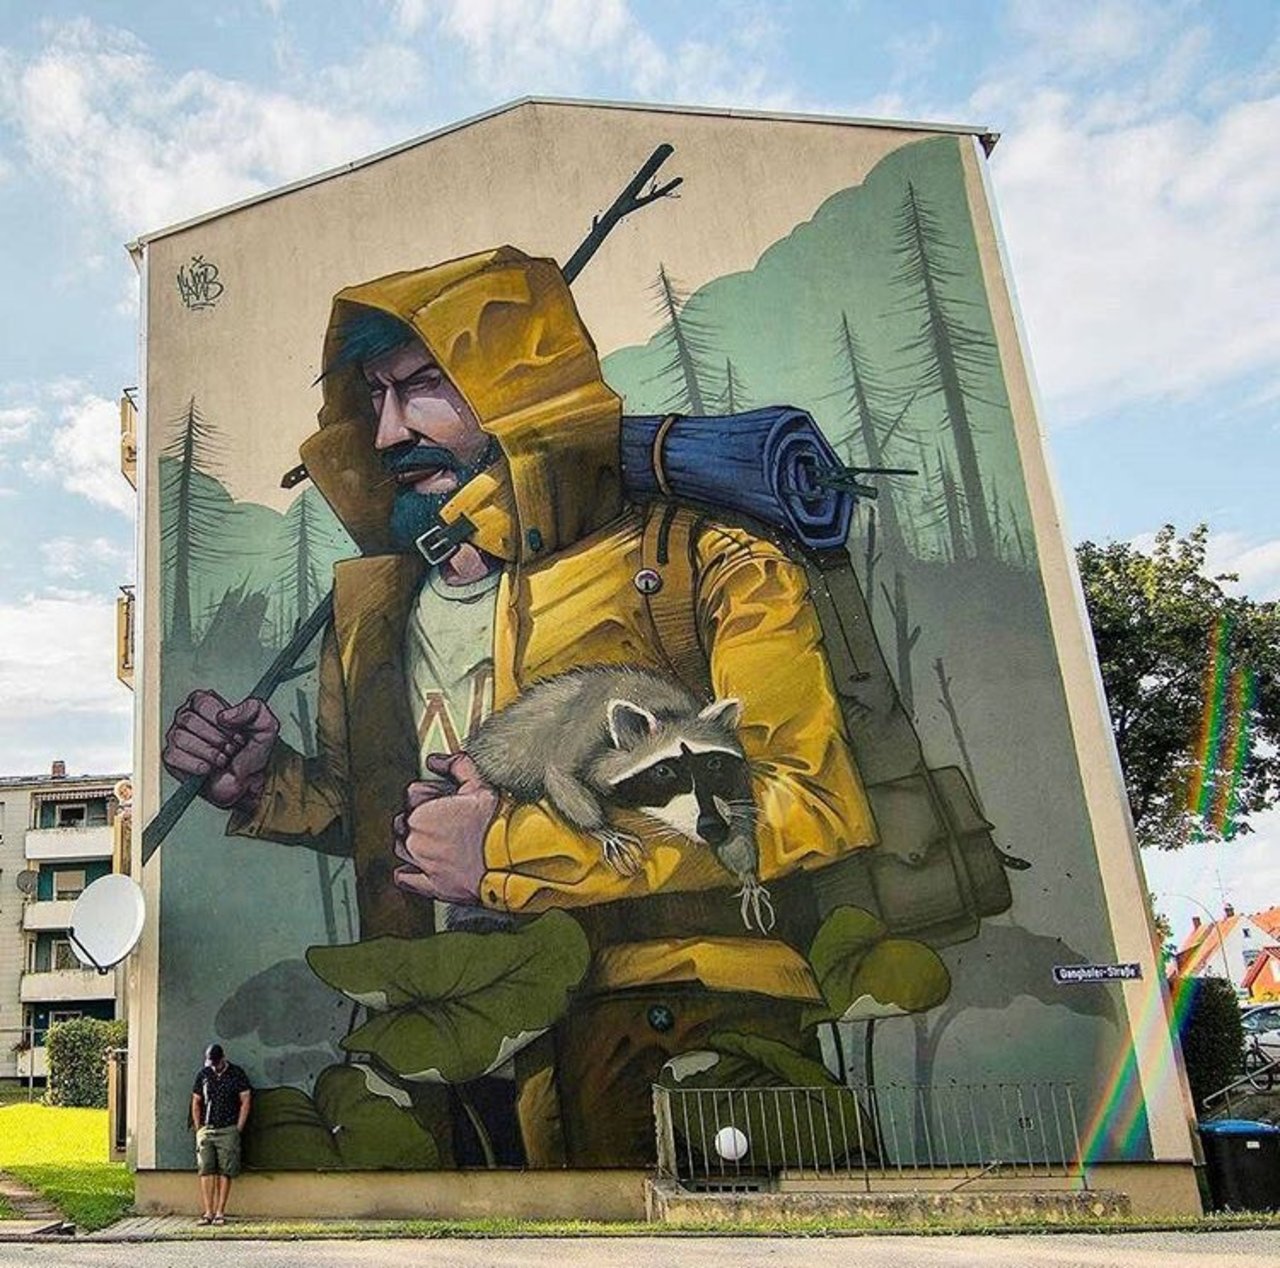 RT GoogleStreetArt: New Street Art by Mr Woodland found in Erding Germany #art #graffiti #mural #streetart https://t.co/hk8Kw9ZYOu